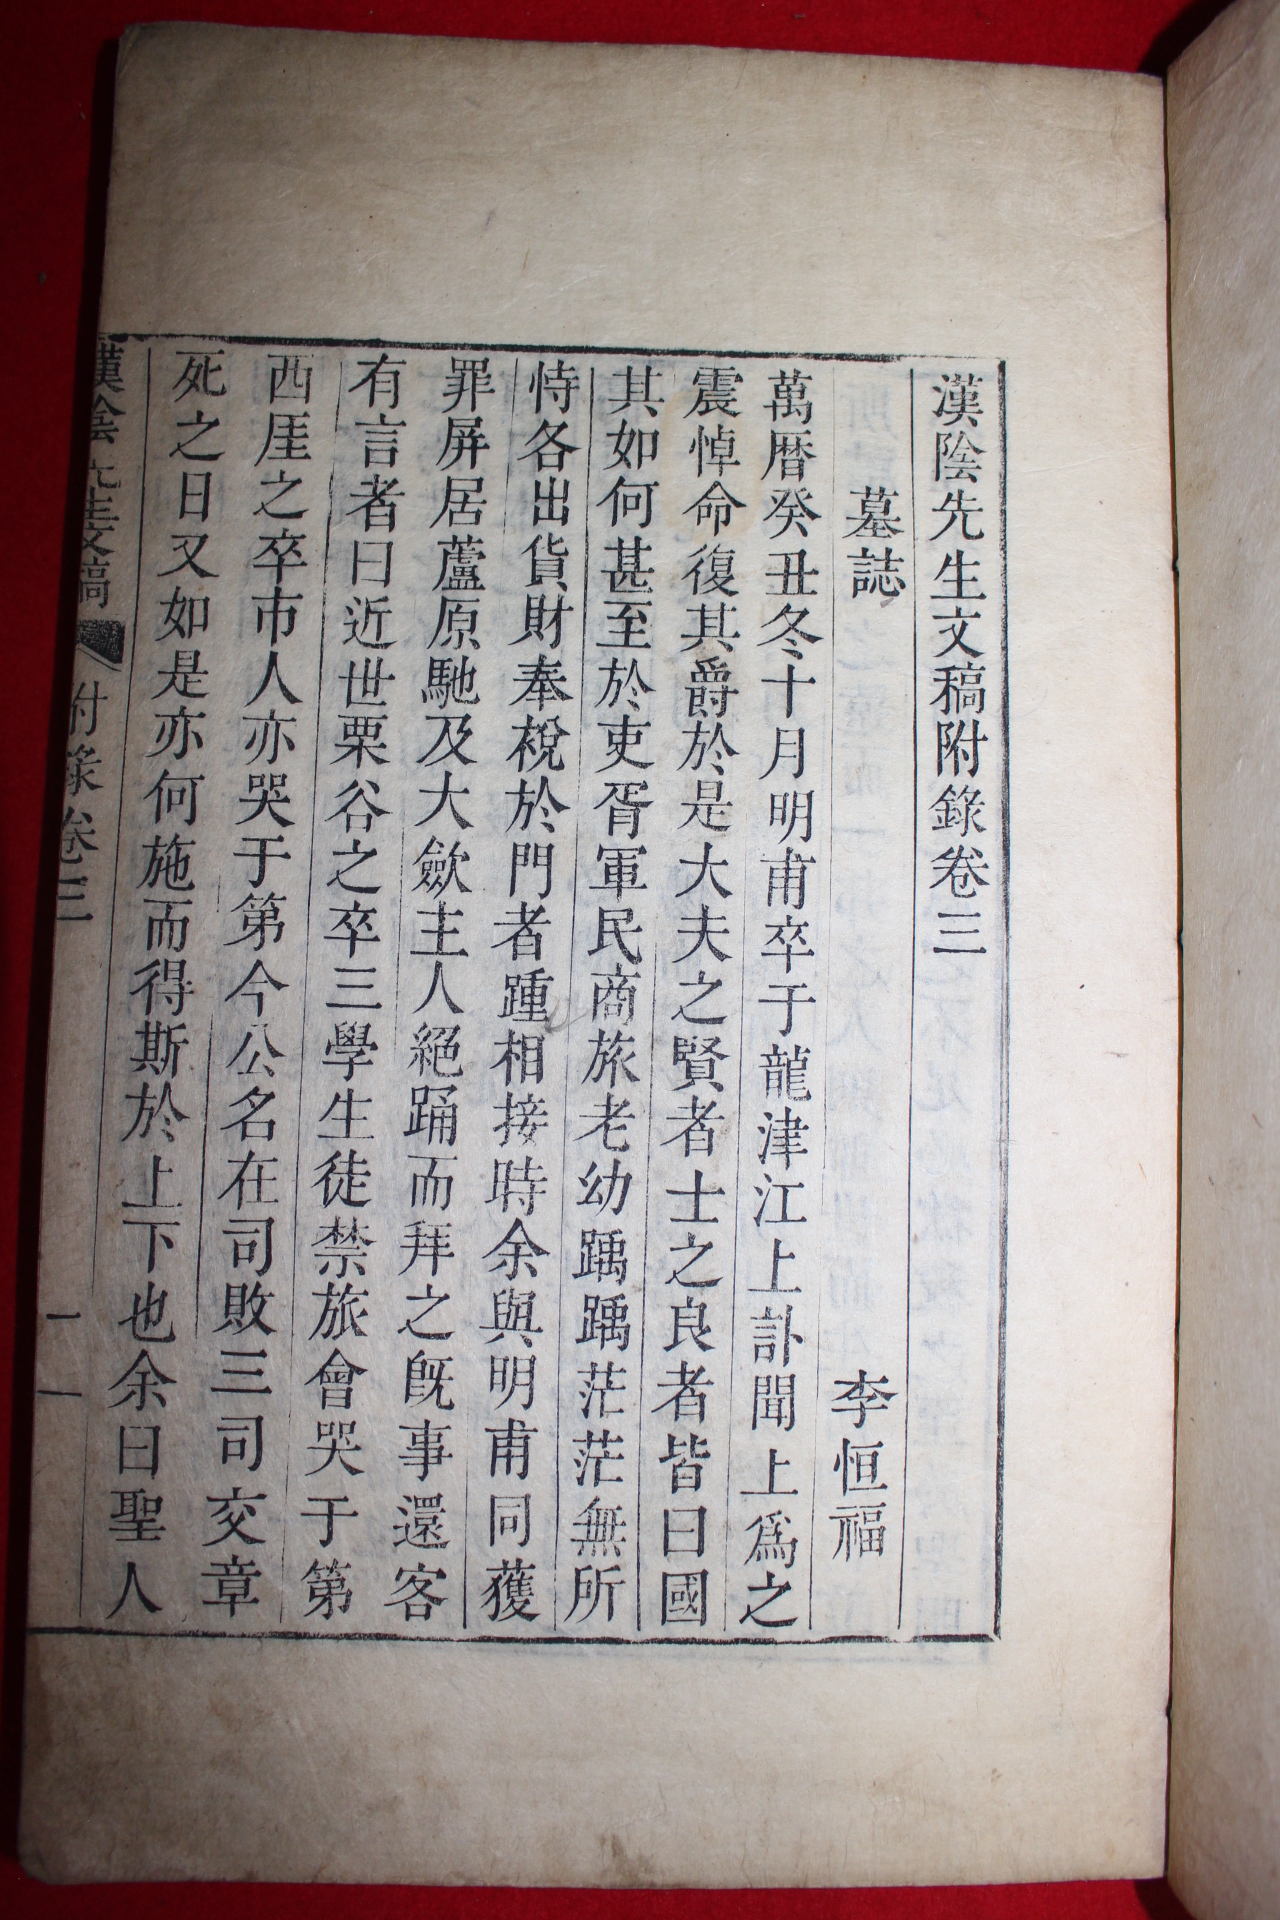 1869년 금속활자본(全史字) 한음선생문고부록(漢陰先生文稿附錄)4권3책완질